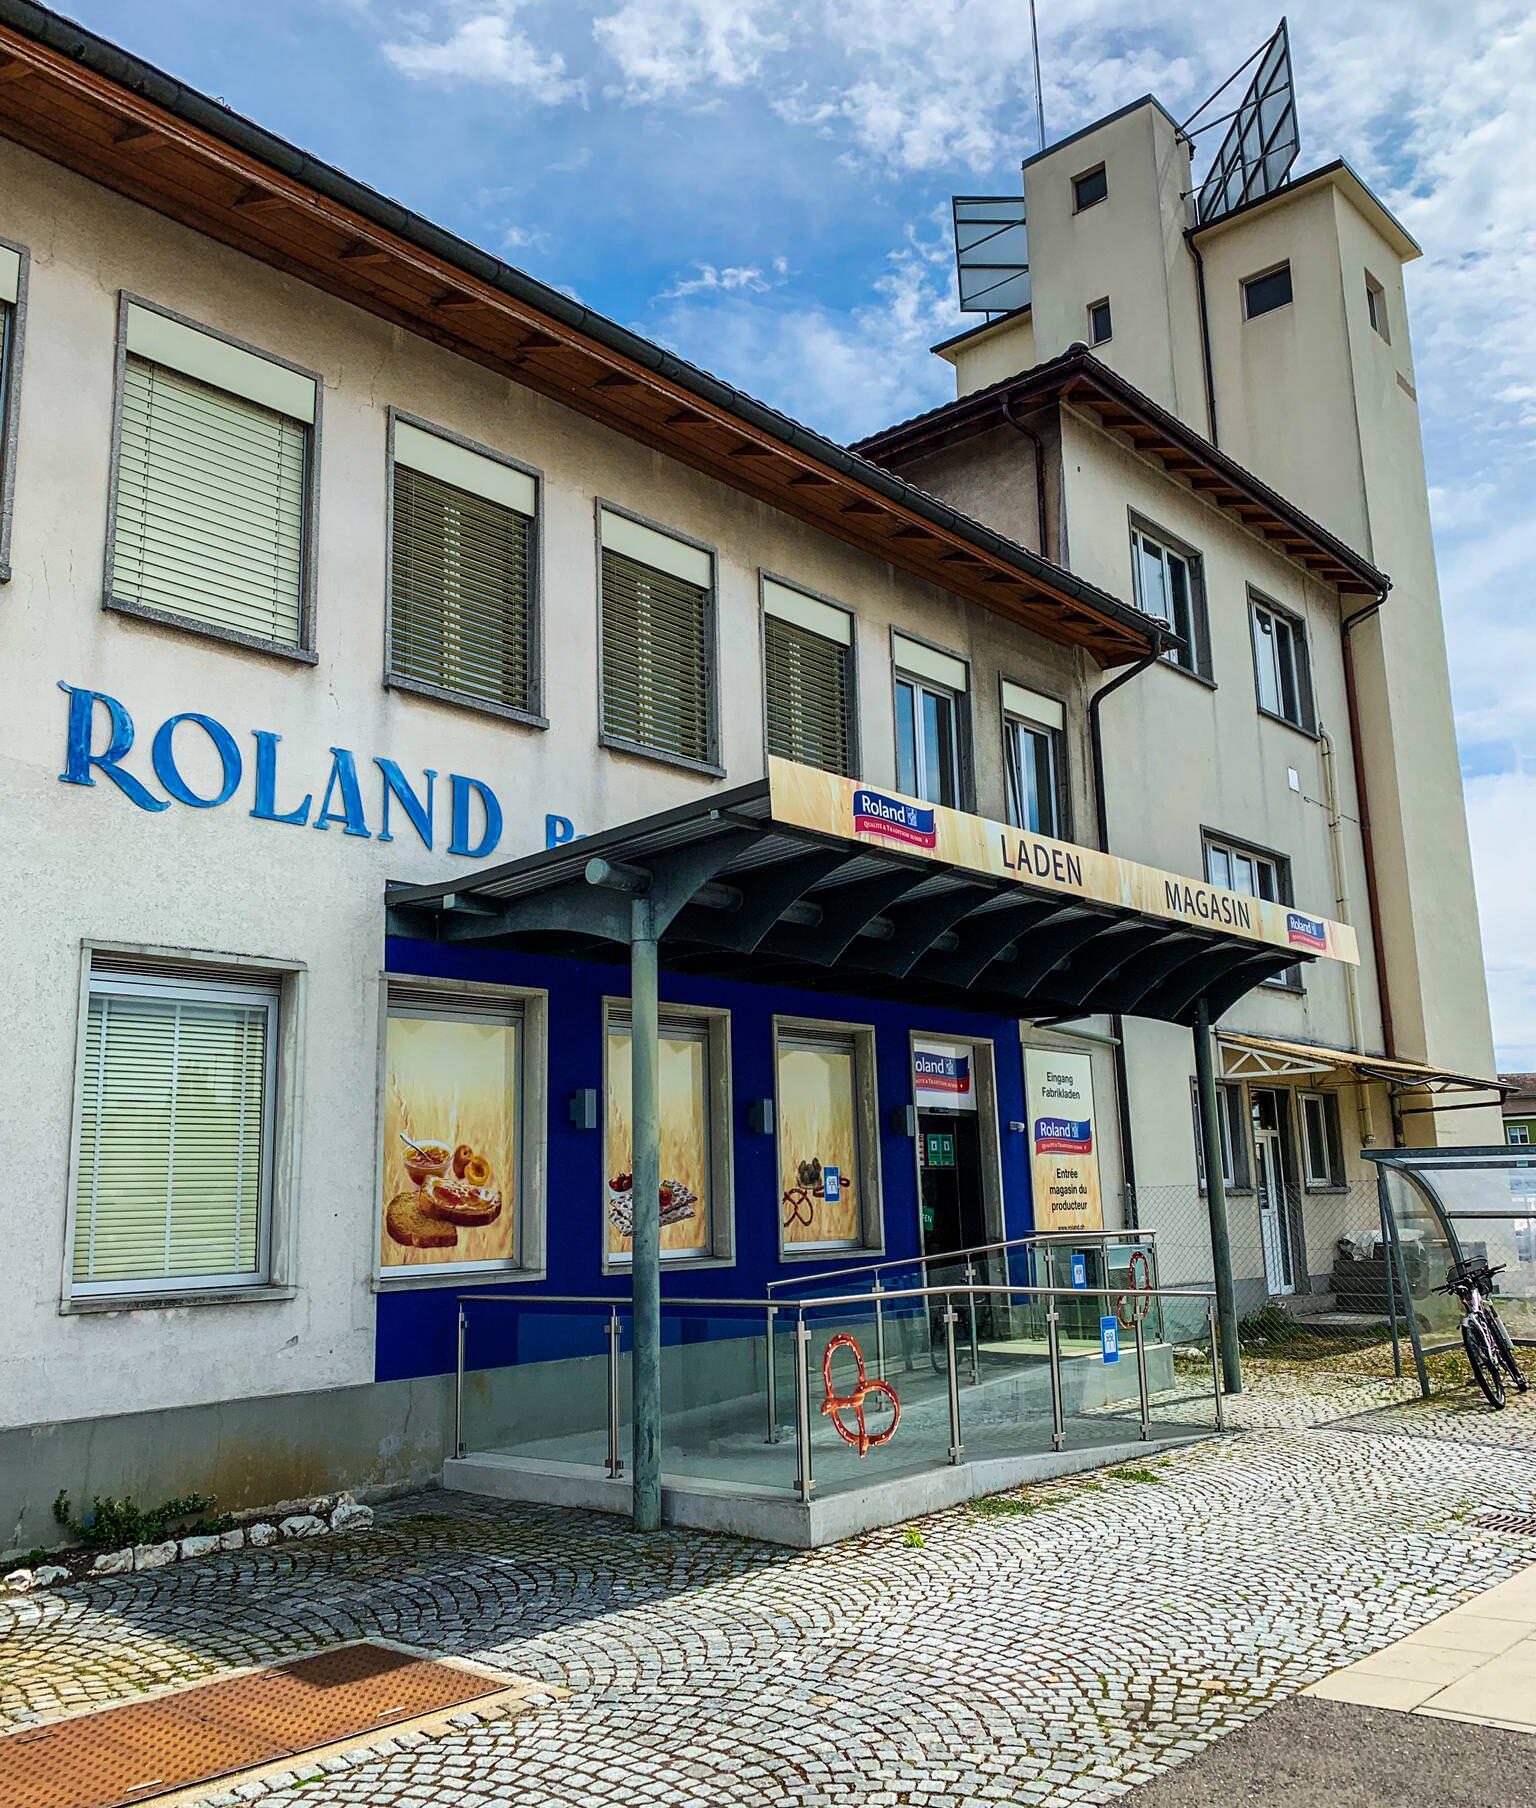 Roland-Fabrikladen-aspect-ratio-85-100